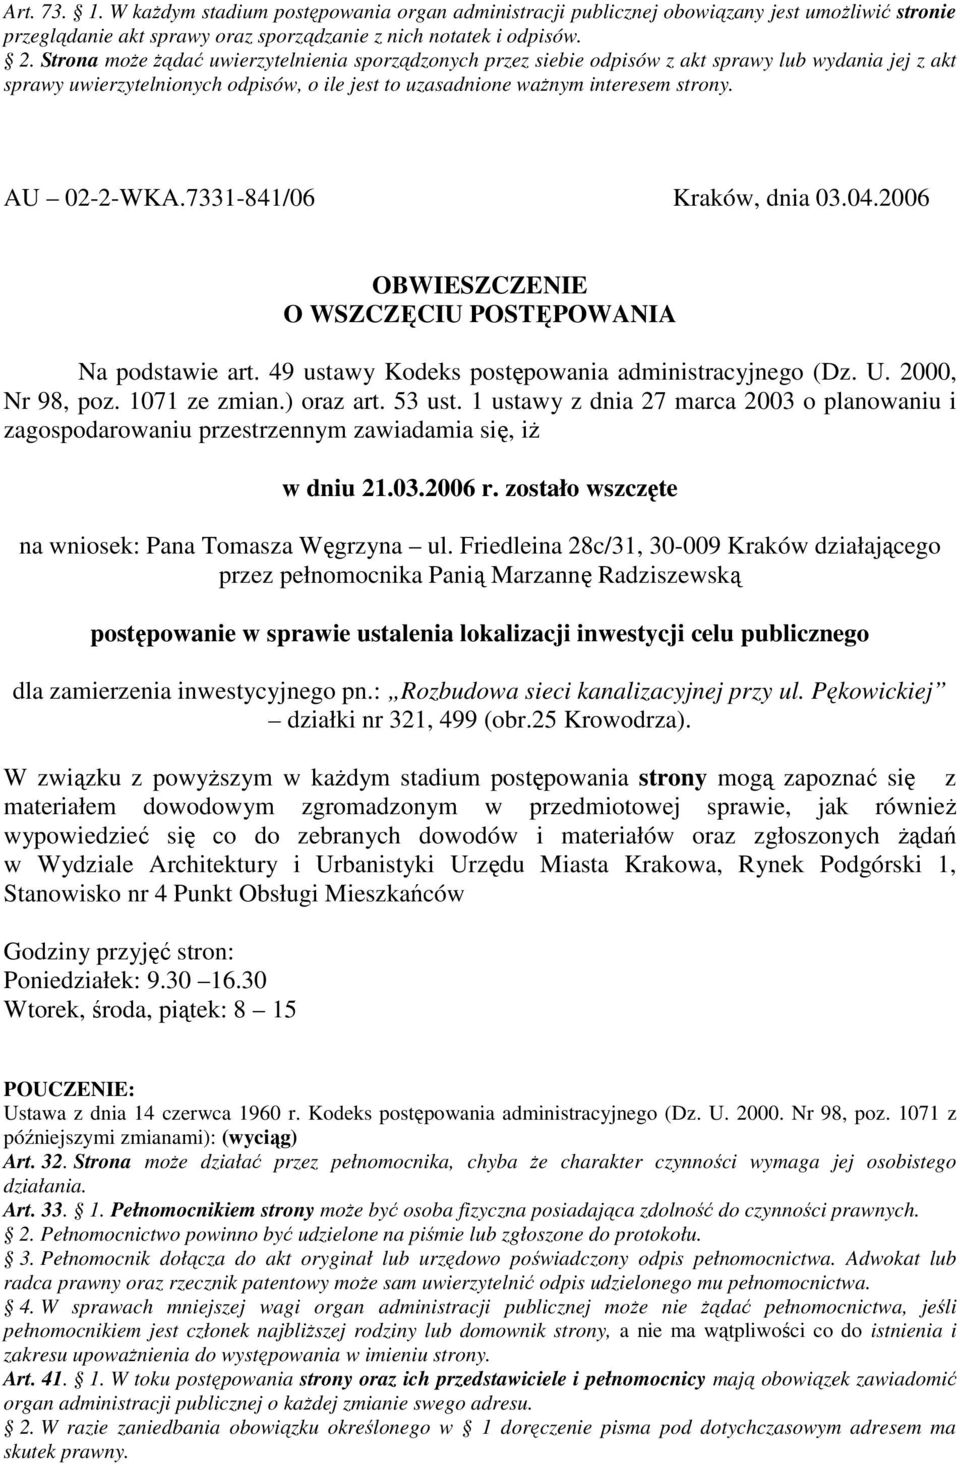 1 ustawy z dnia 27 marca 2003 o planowaniu i zagospodarowaniu przestrzennym zawiadamia się, iŝ w dniu 21.03.2006 r. zostało wszczęte na wniosek: Pana Tomasza Węgrzyna ul.